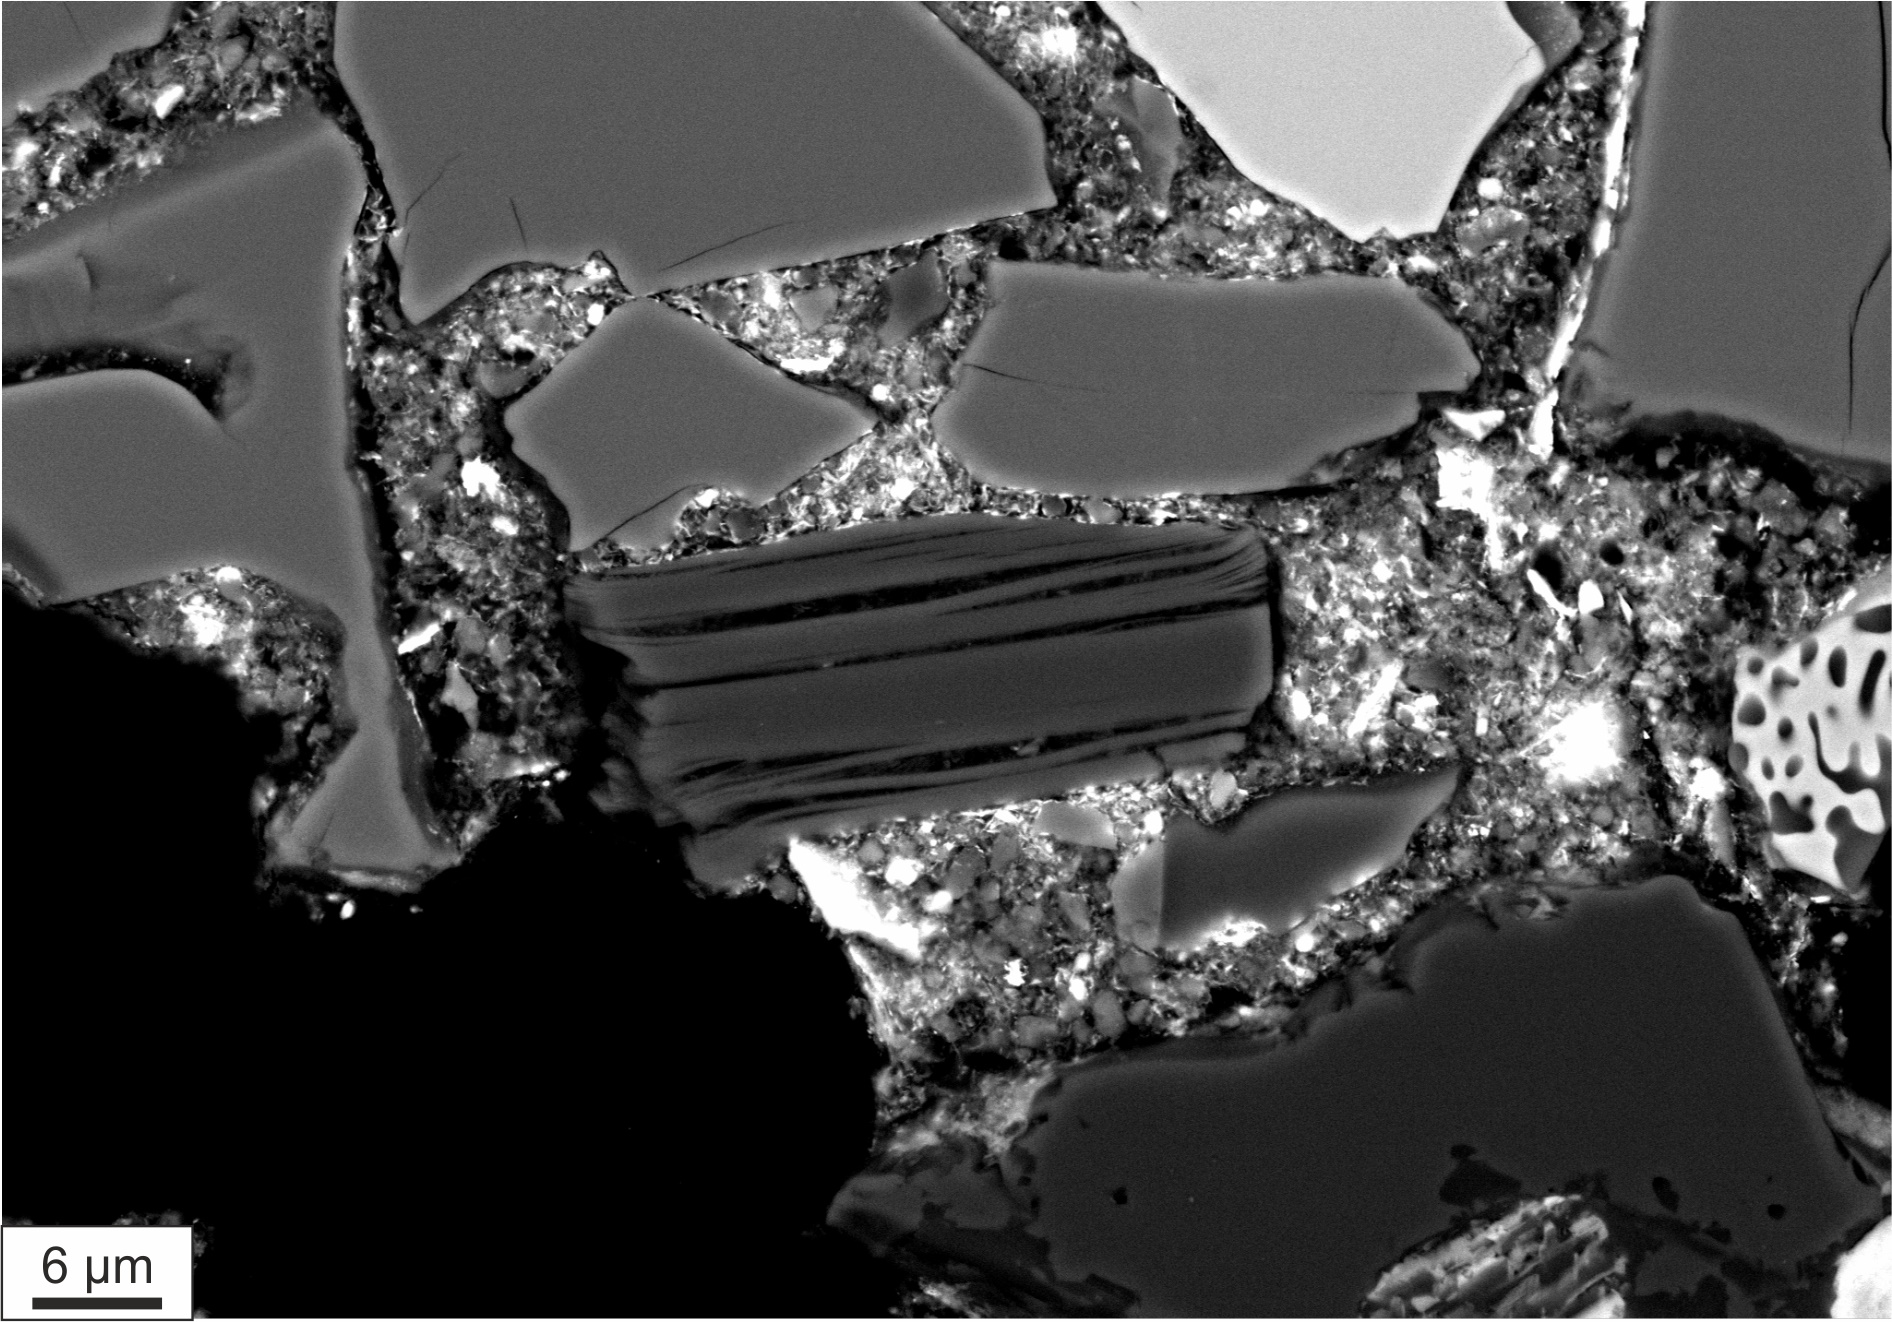 Μοναδική ανακάλυψη Έλληνα επιστήμονα: Νέα πηγή προέλευσης του νερού στη Γη αποκαλύπτει ιστορικός μετεωρίτης